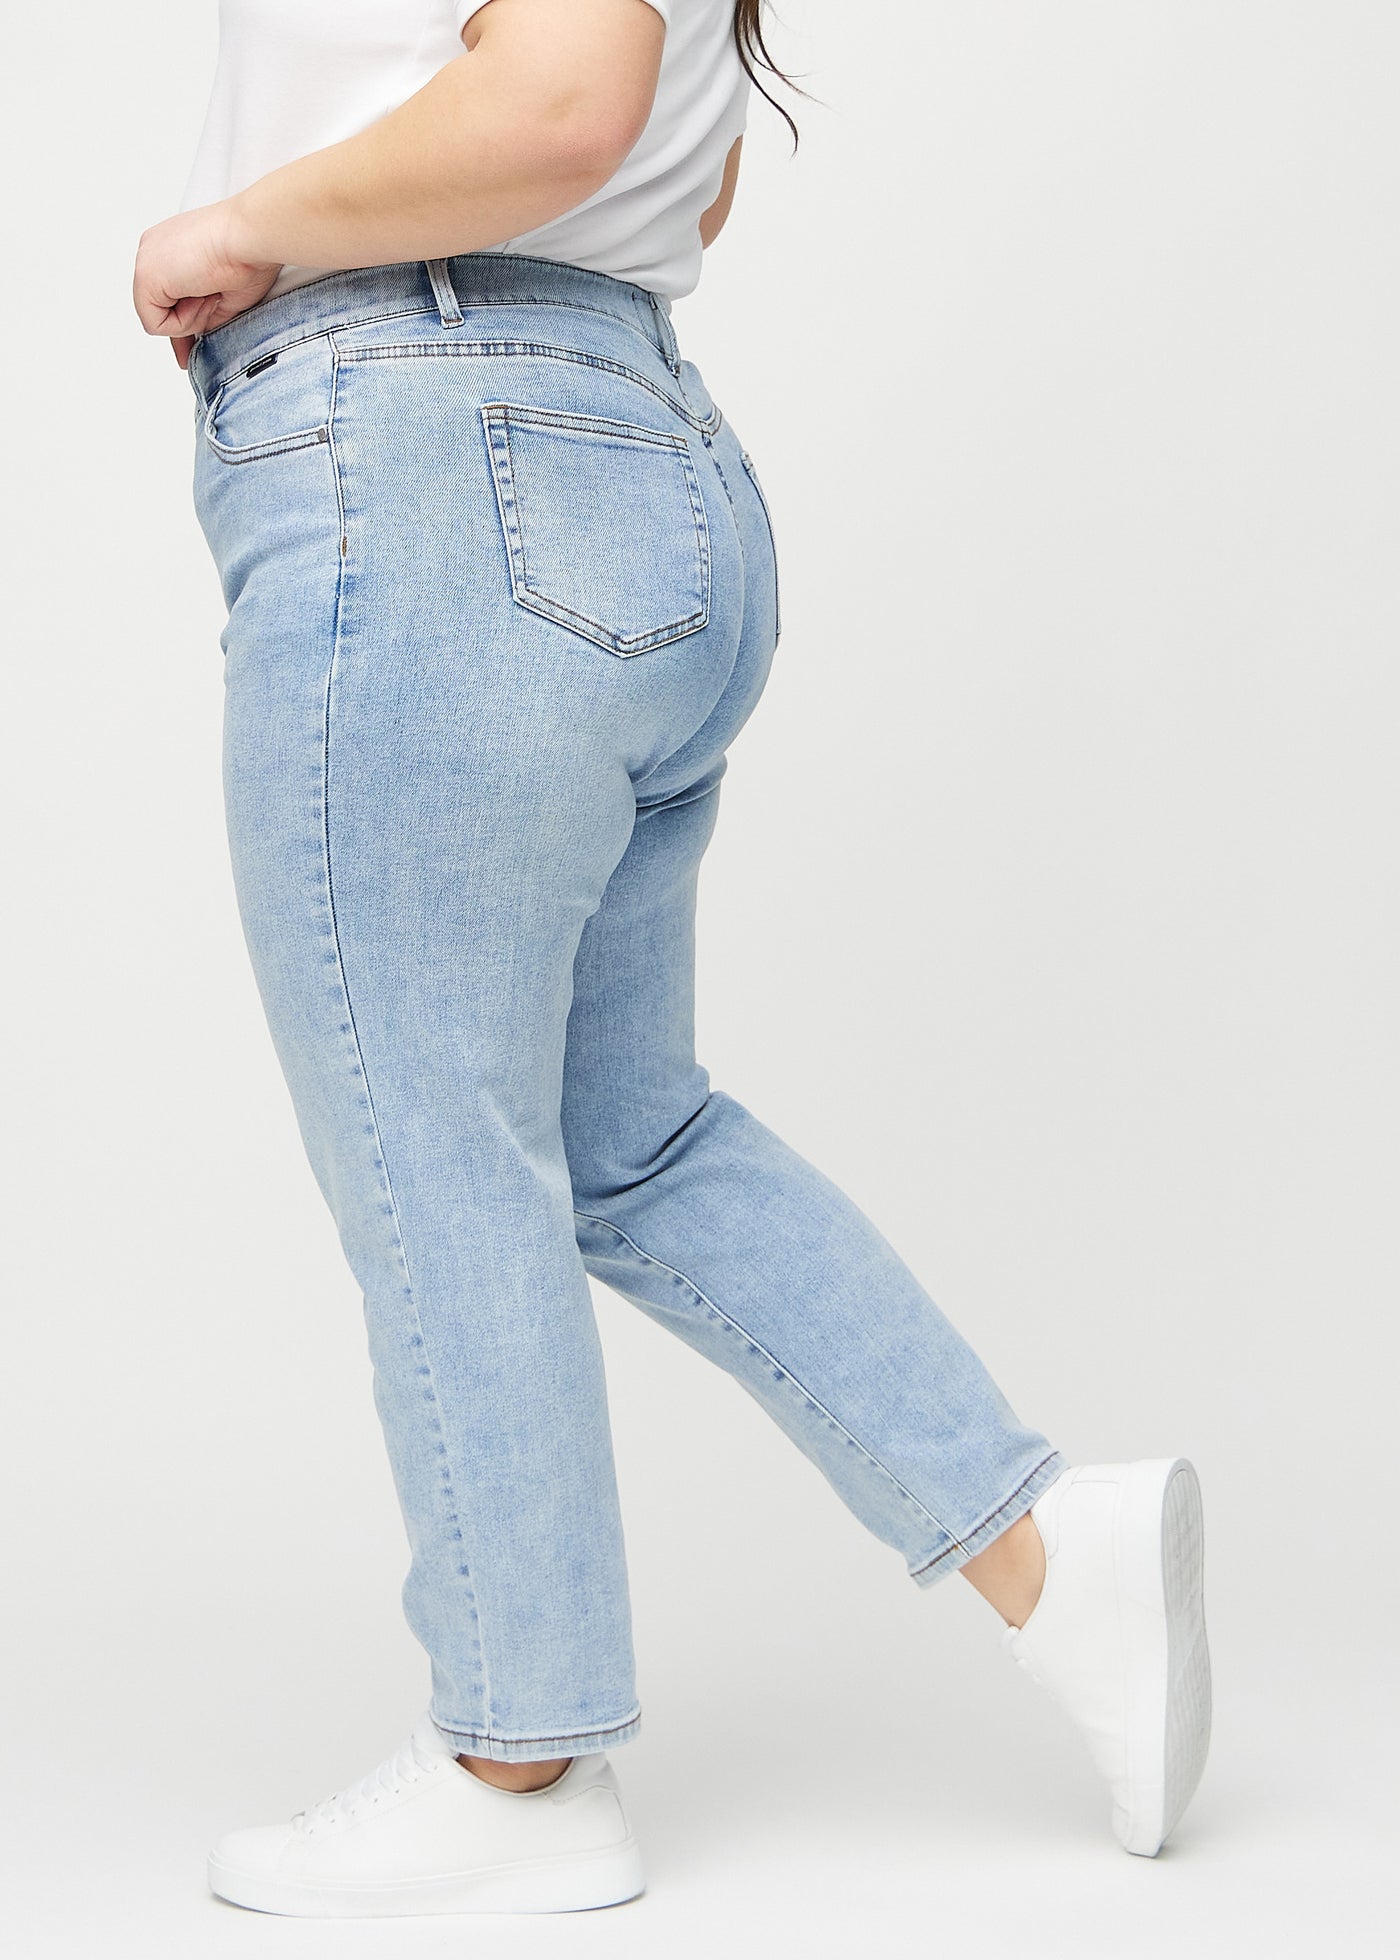 Lys denim regular jeans set fra siden på en plus-size model.